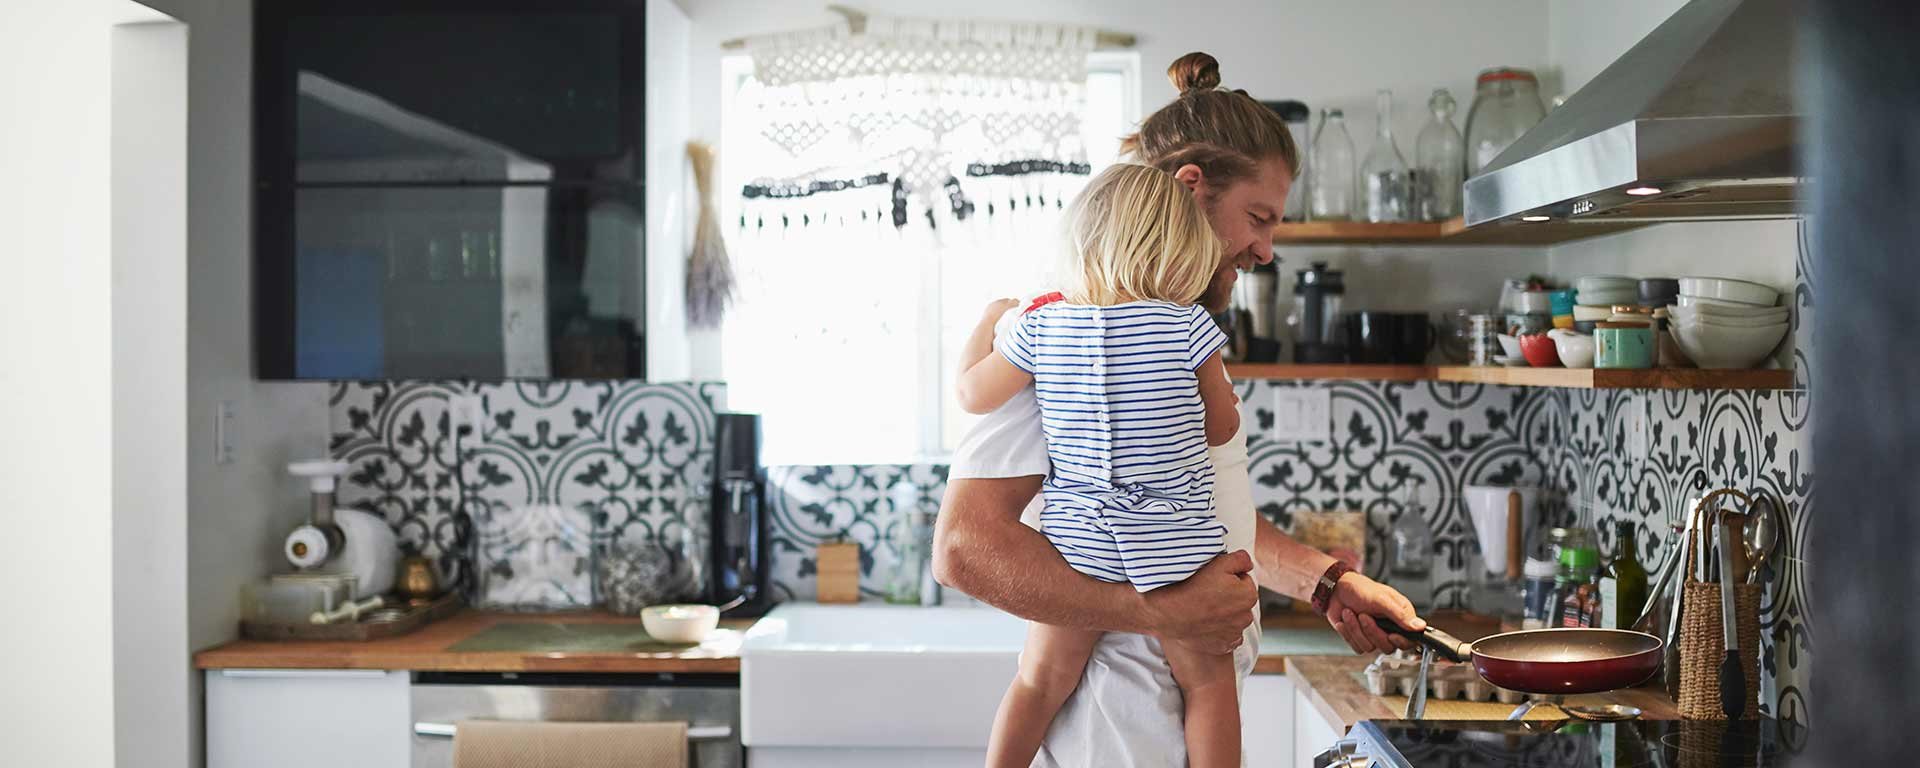 Mies kokkaa lapsi sylissä keittiössä